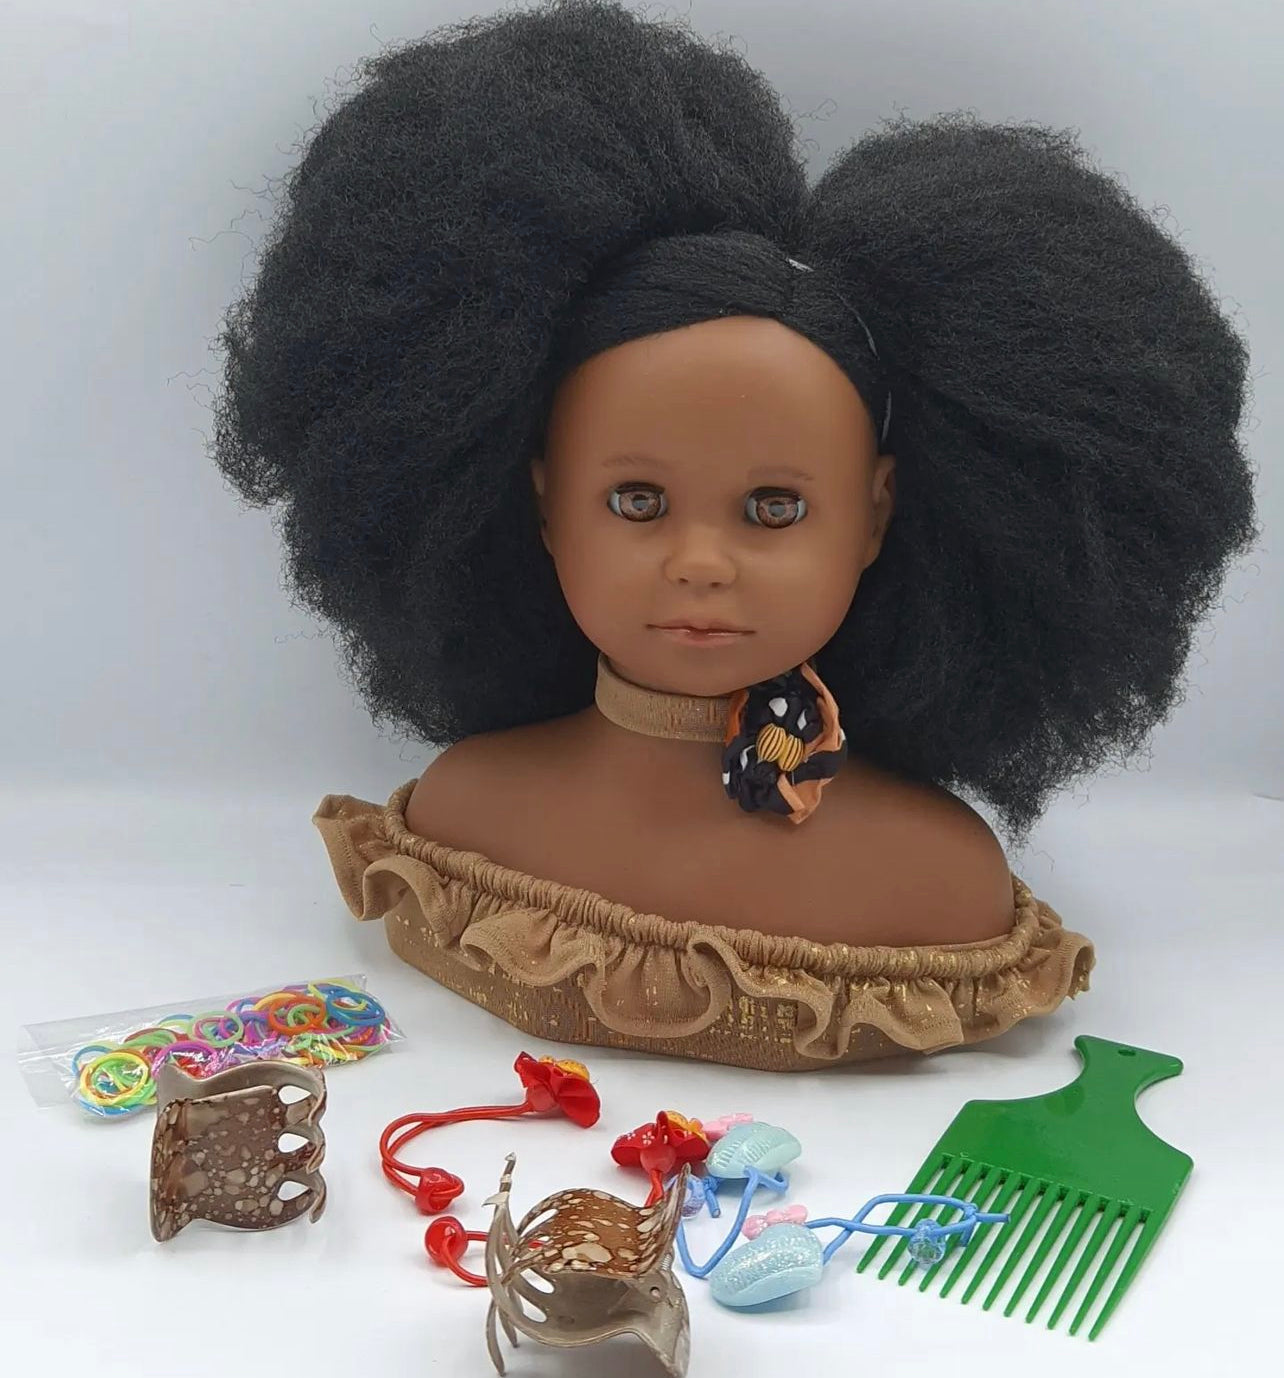 Tête à coiffer afro